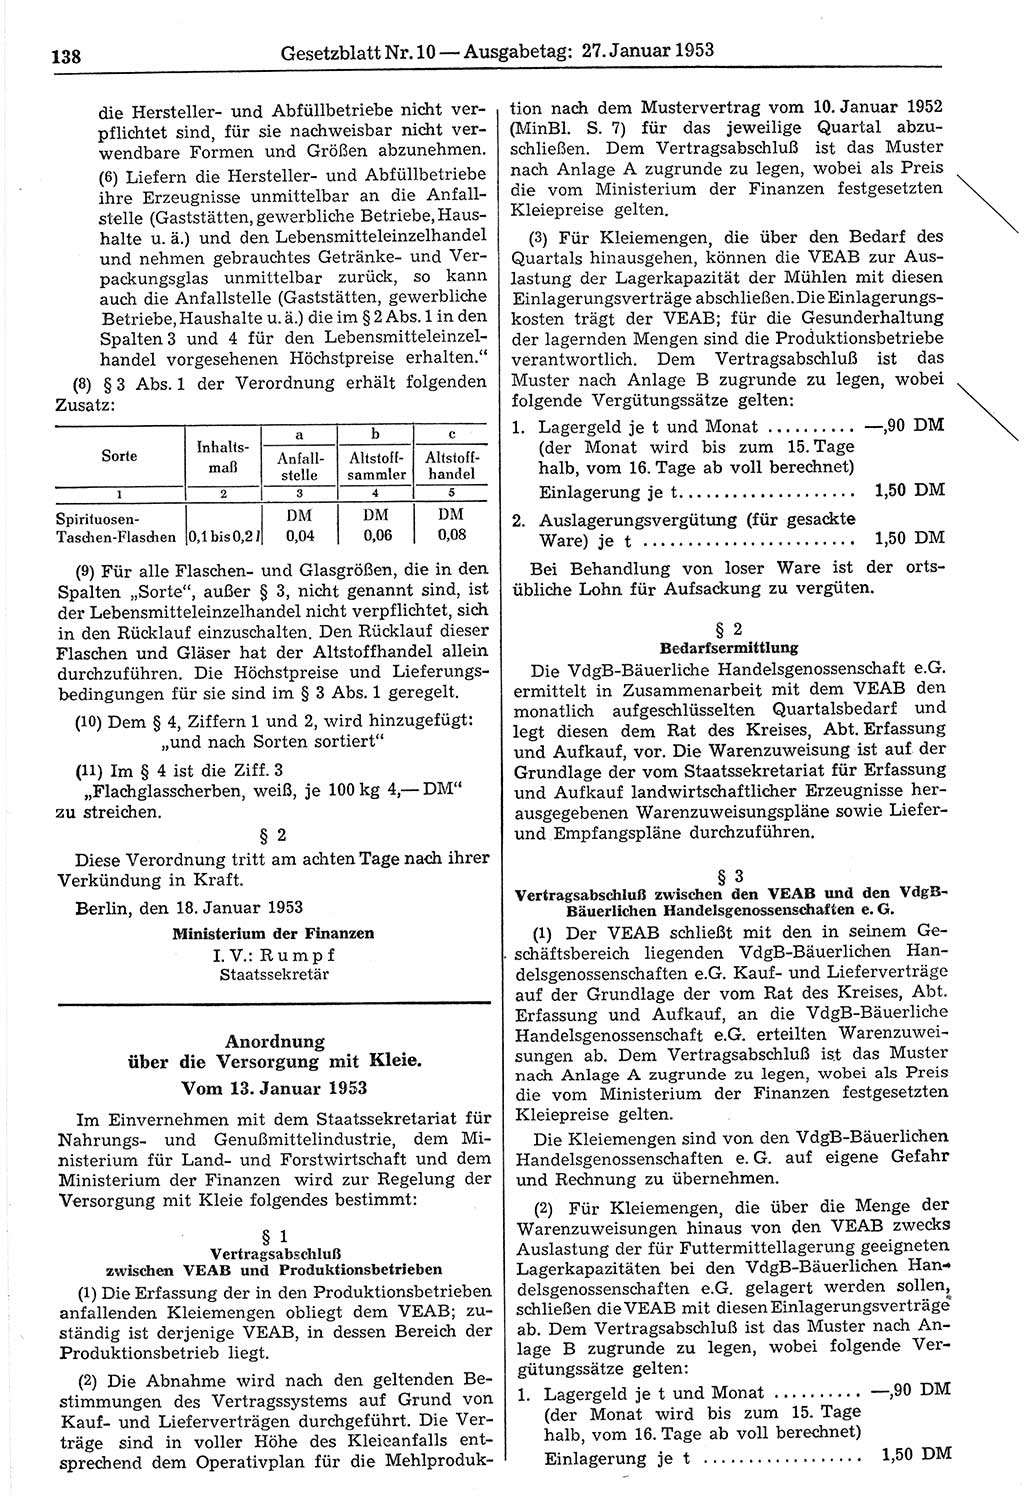 Gesetzblatt (GBl.) der Deutschen Demokratischen Republik (DDR) 1953, Seite 138 (GBl. DDR 1953, S. 138)